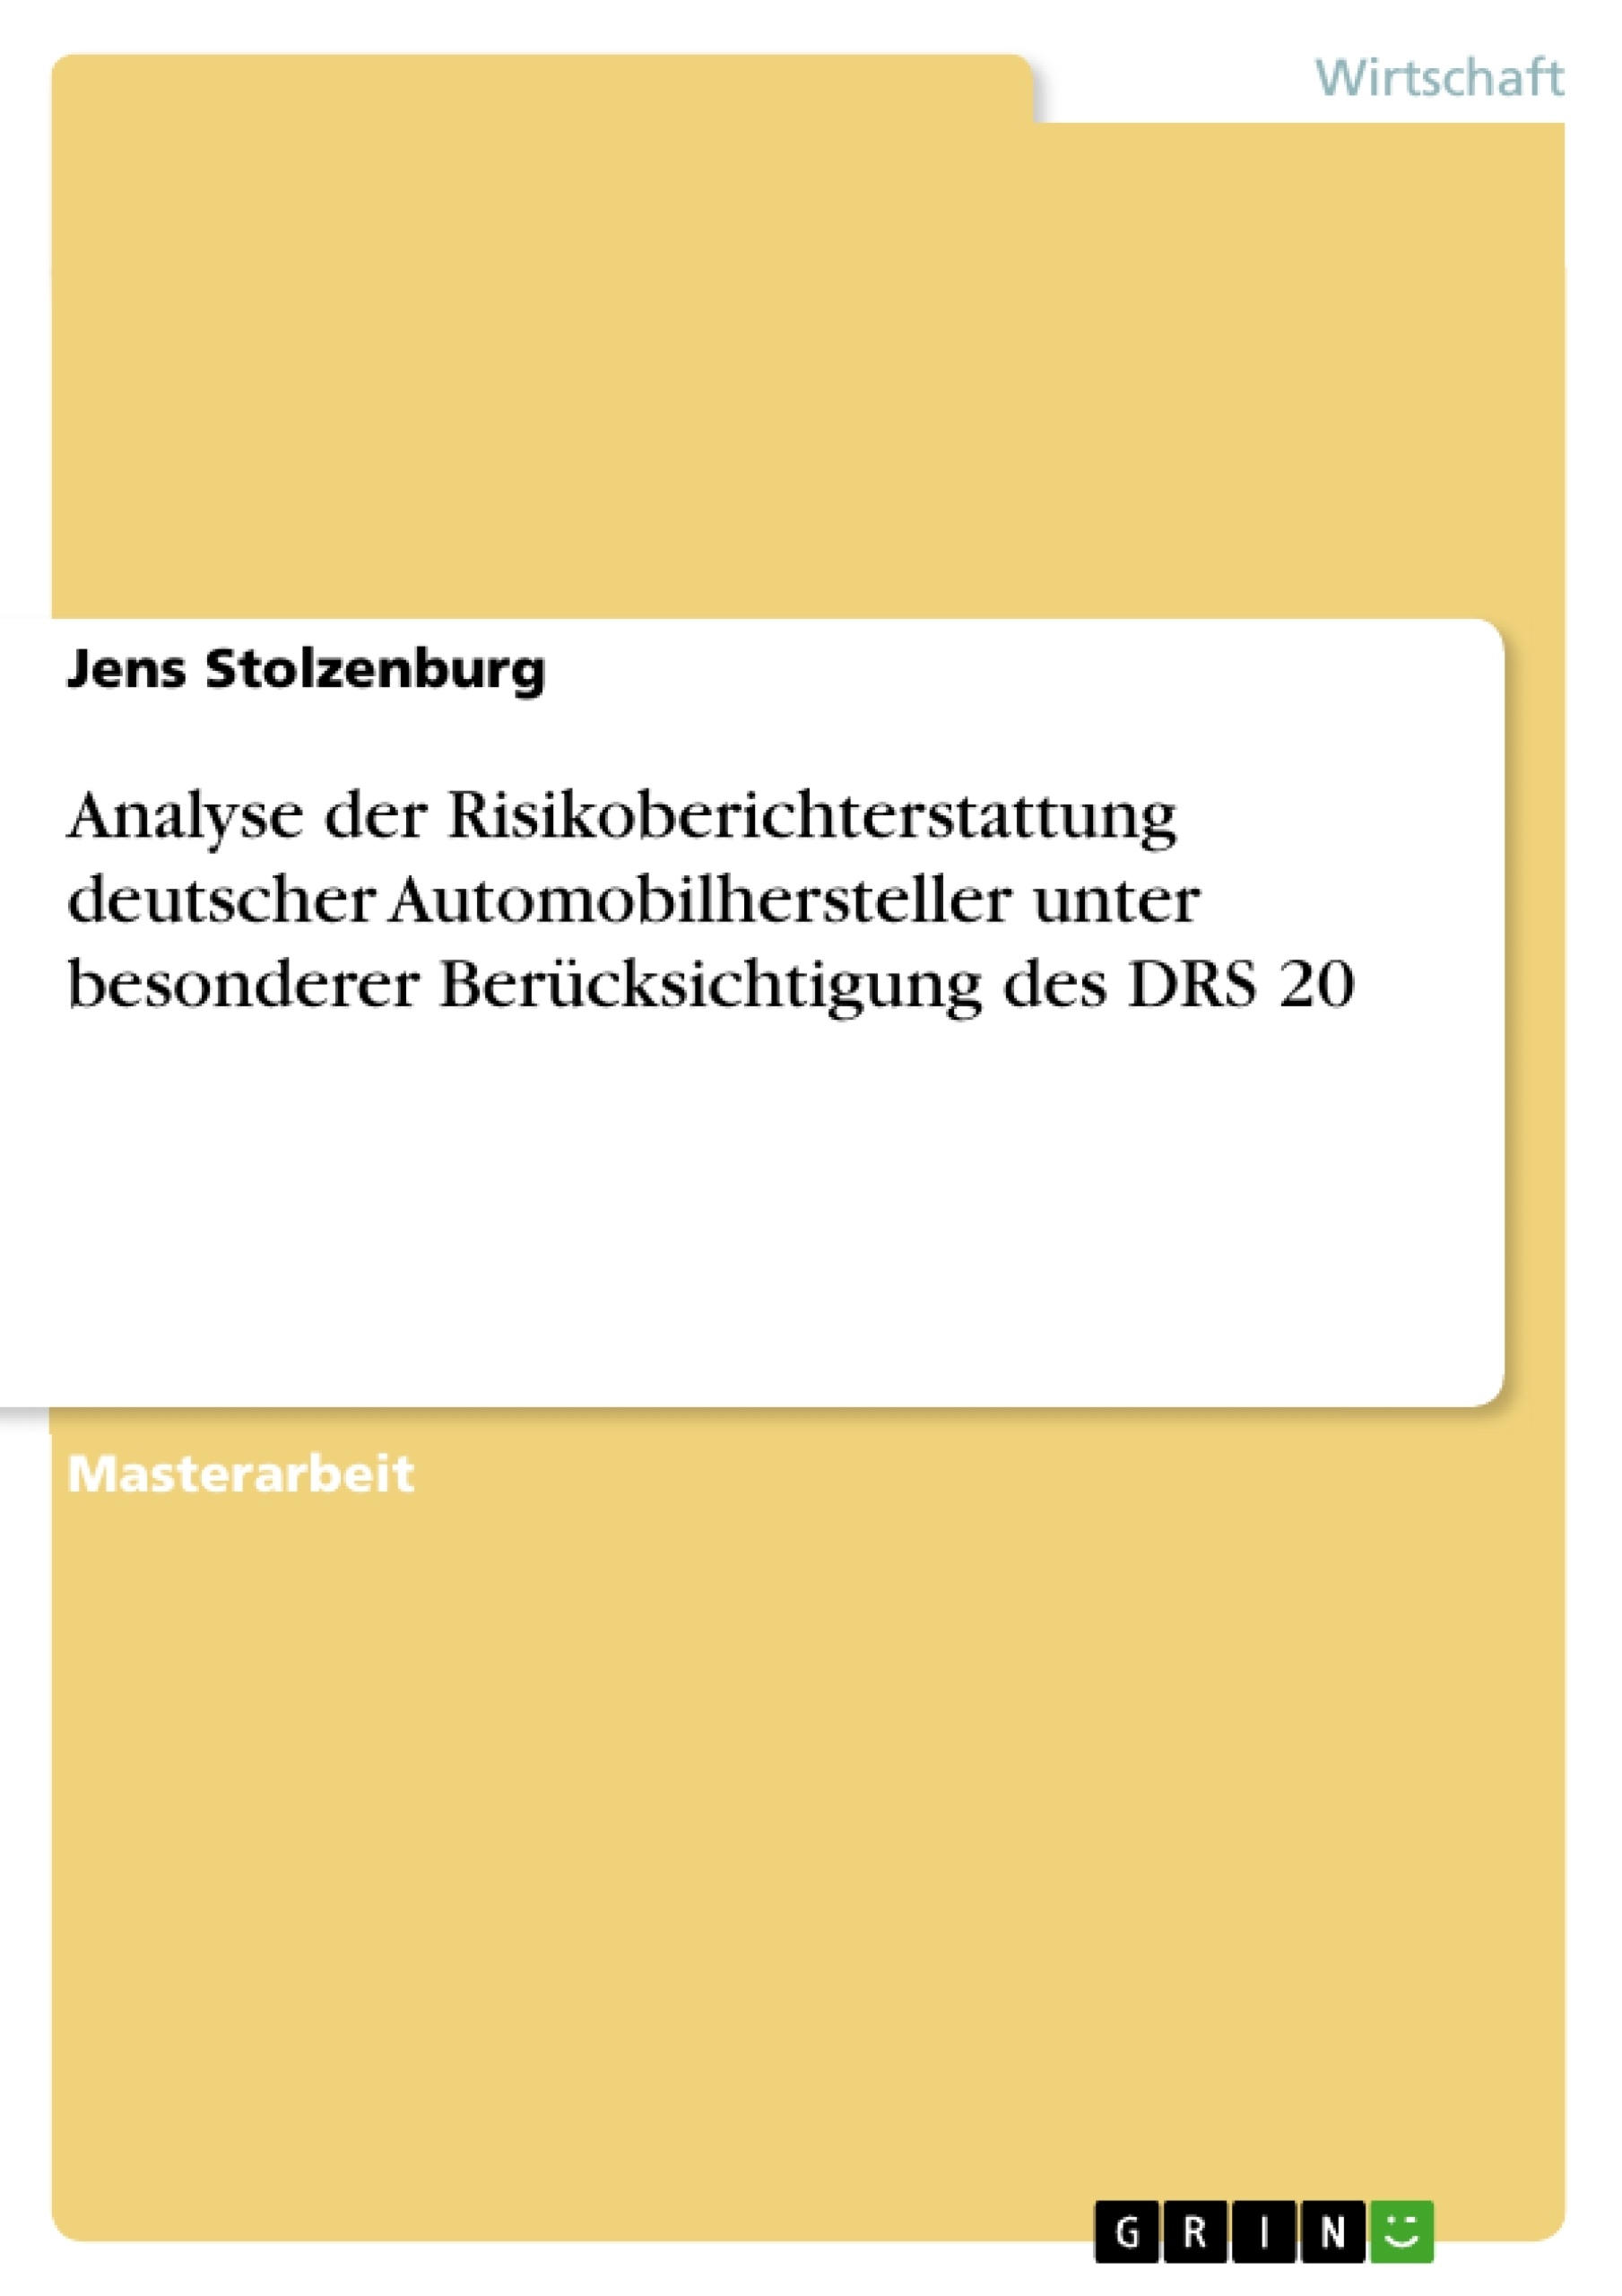 Titre: Analyse der Risikoberichterstattung deutscher Automobilhersteller unter besonderer Berücksichtigung des DRS 20